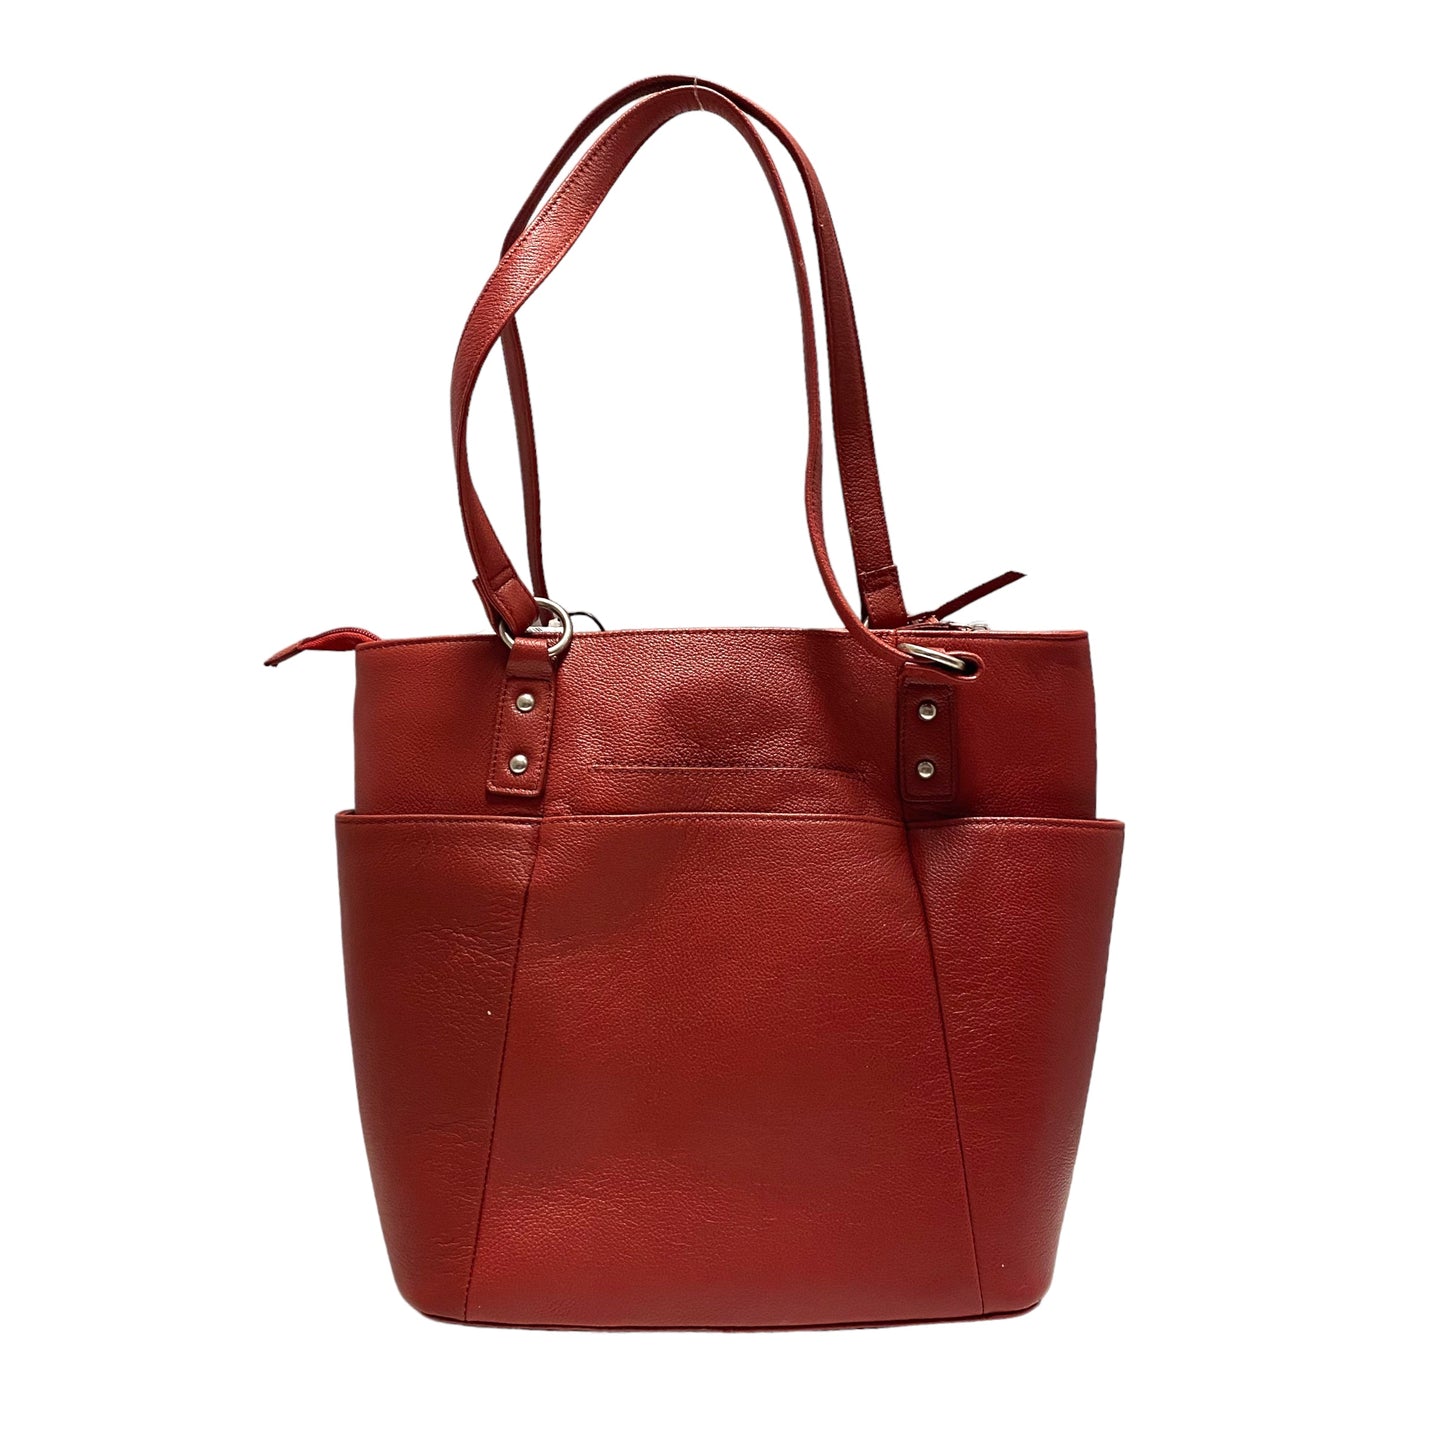 Handbag Leather By ELLA SIMONE Size: Large